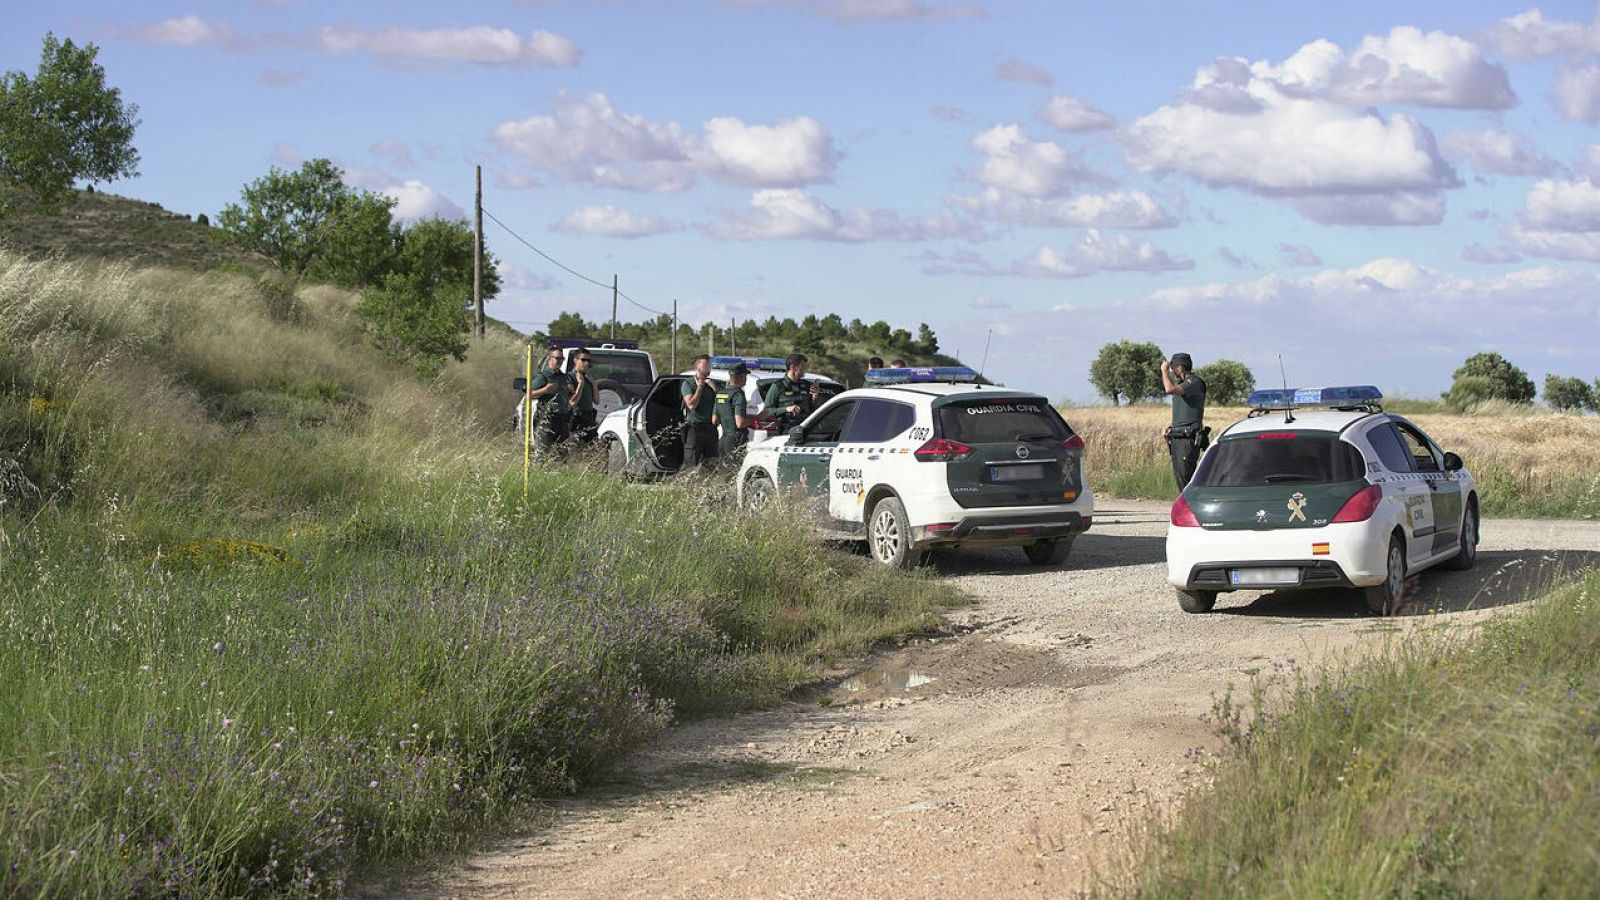 La Guardia Civil detiene al 'Rambo de Requena' tras herir a un agente y darse a la fuga - RTVE.es